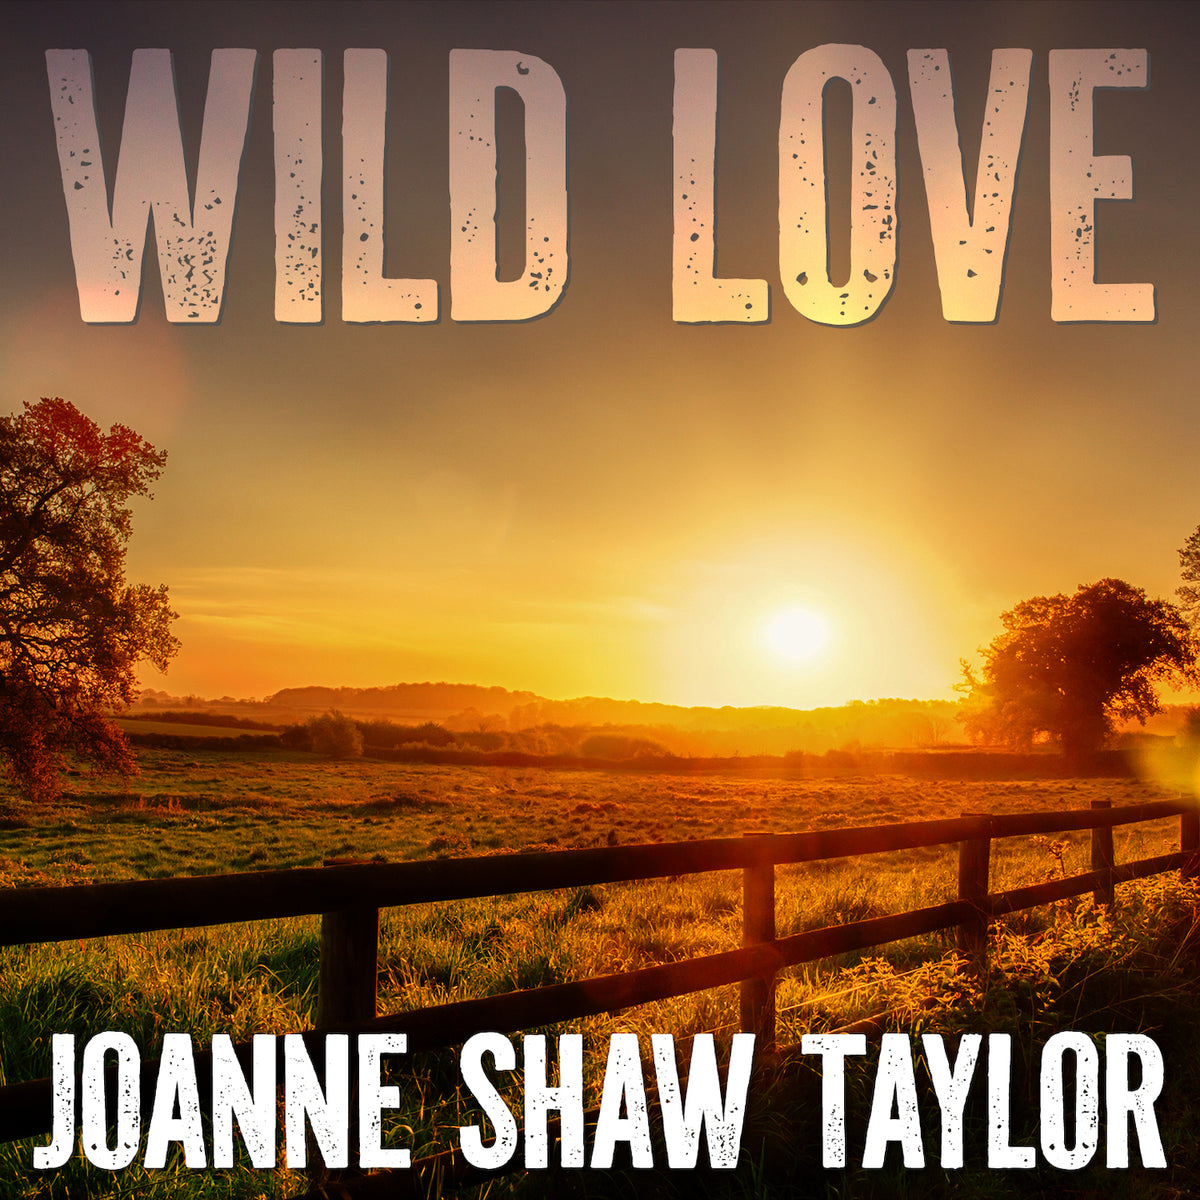 Joanne Shaw Taylor: "Wild Love" - Single